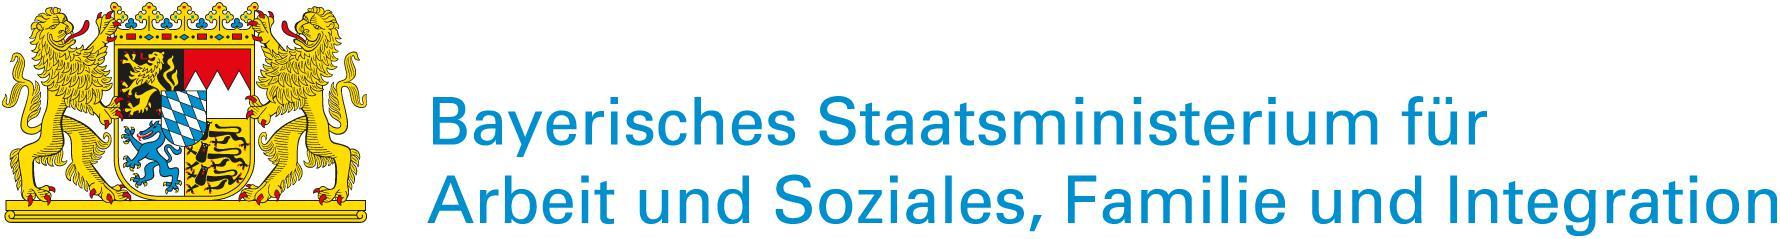 Logo Stastsministerium